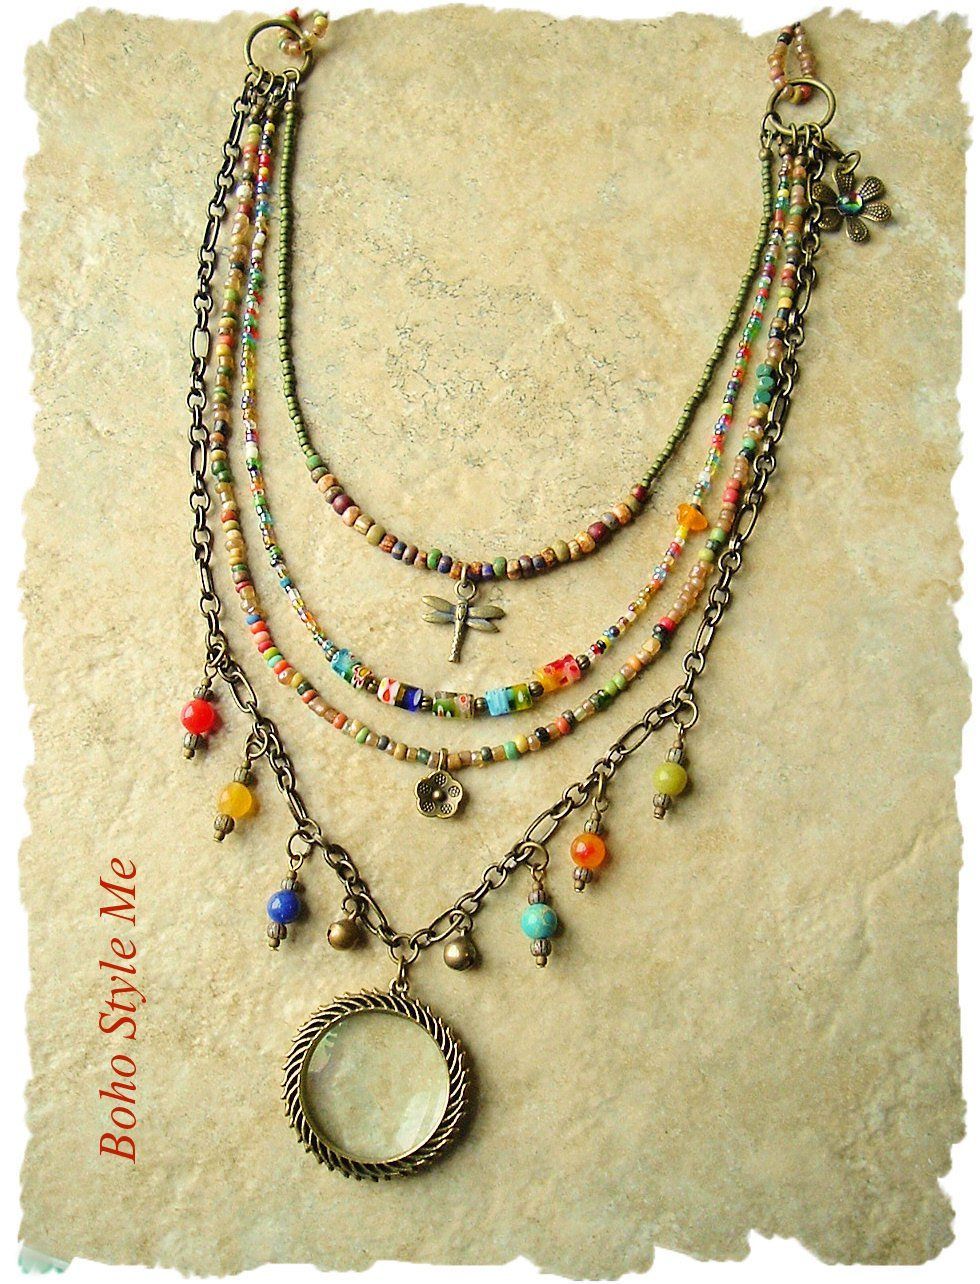 Modern Hippie Jewelry - Modern Hippie Jewelry -   16 diy Jewelry hippie ideas